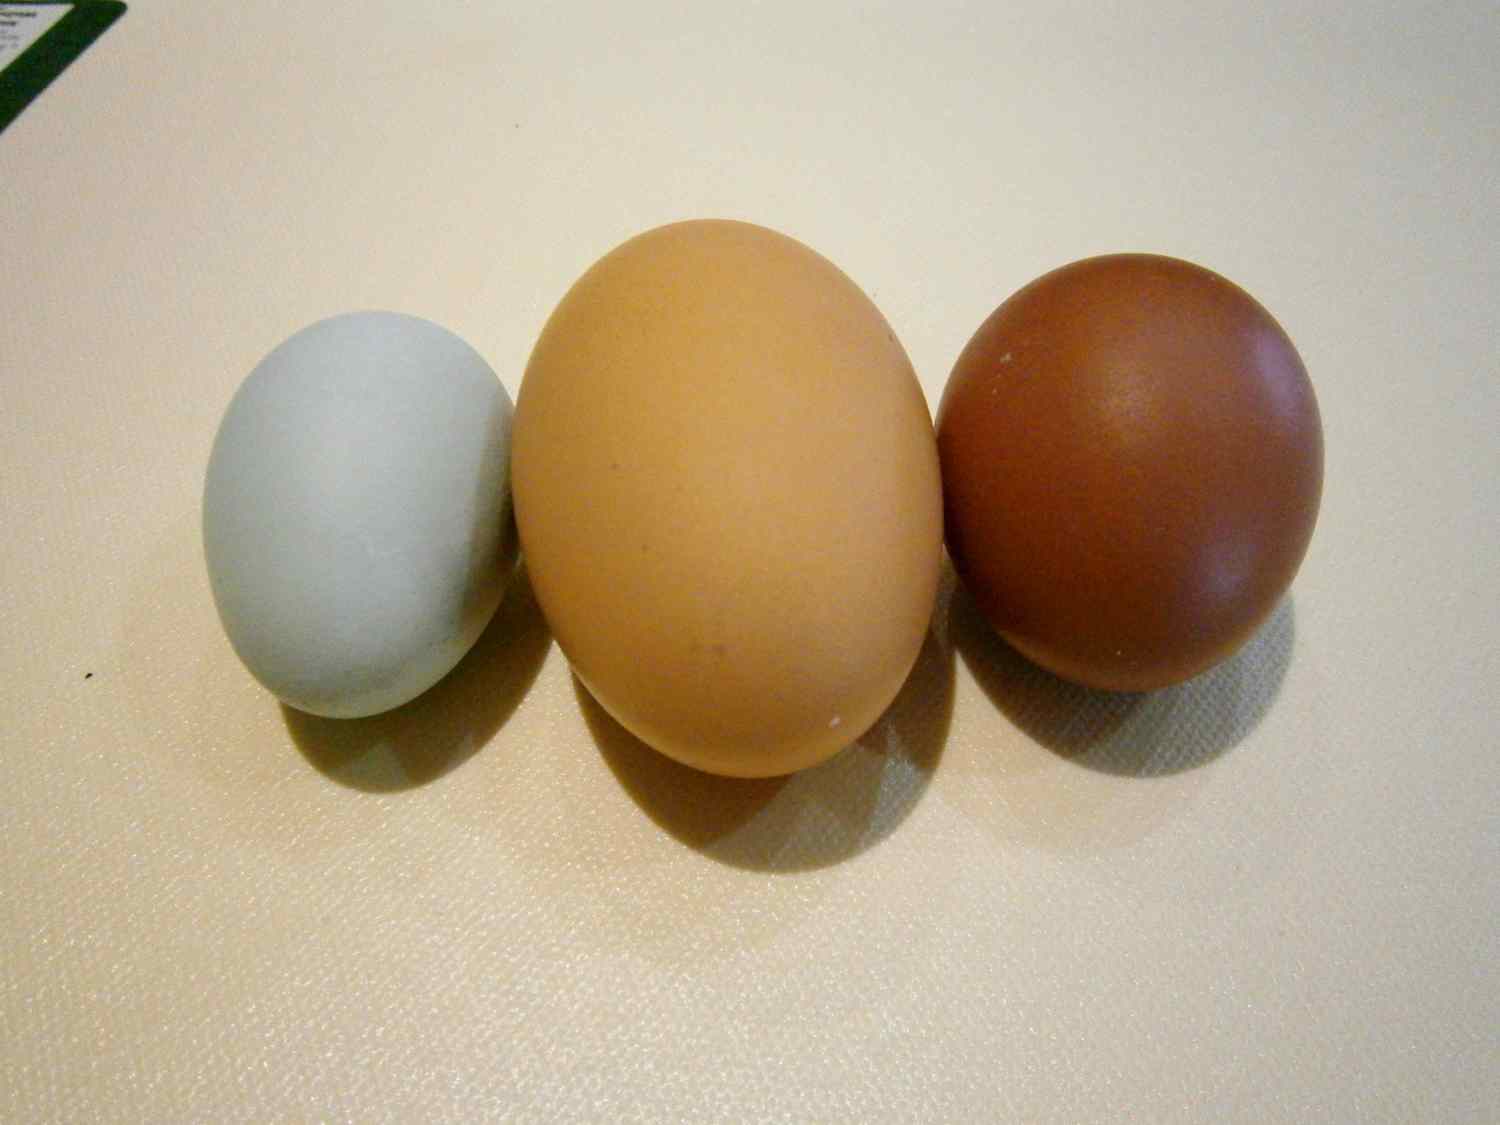 65859_eggs2.jpg